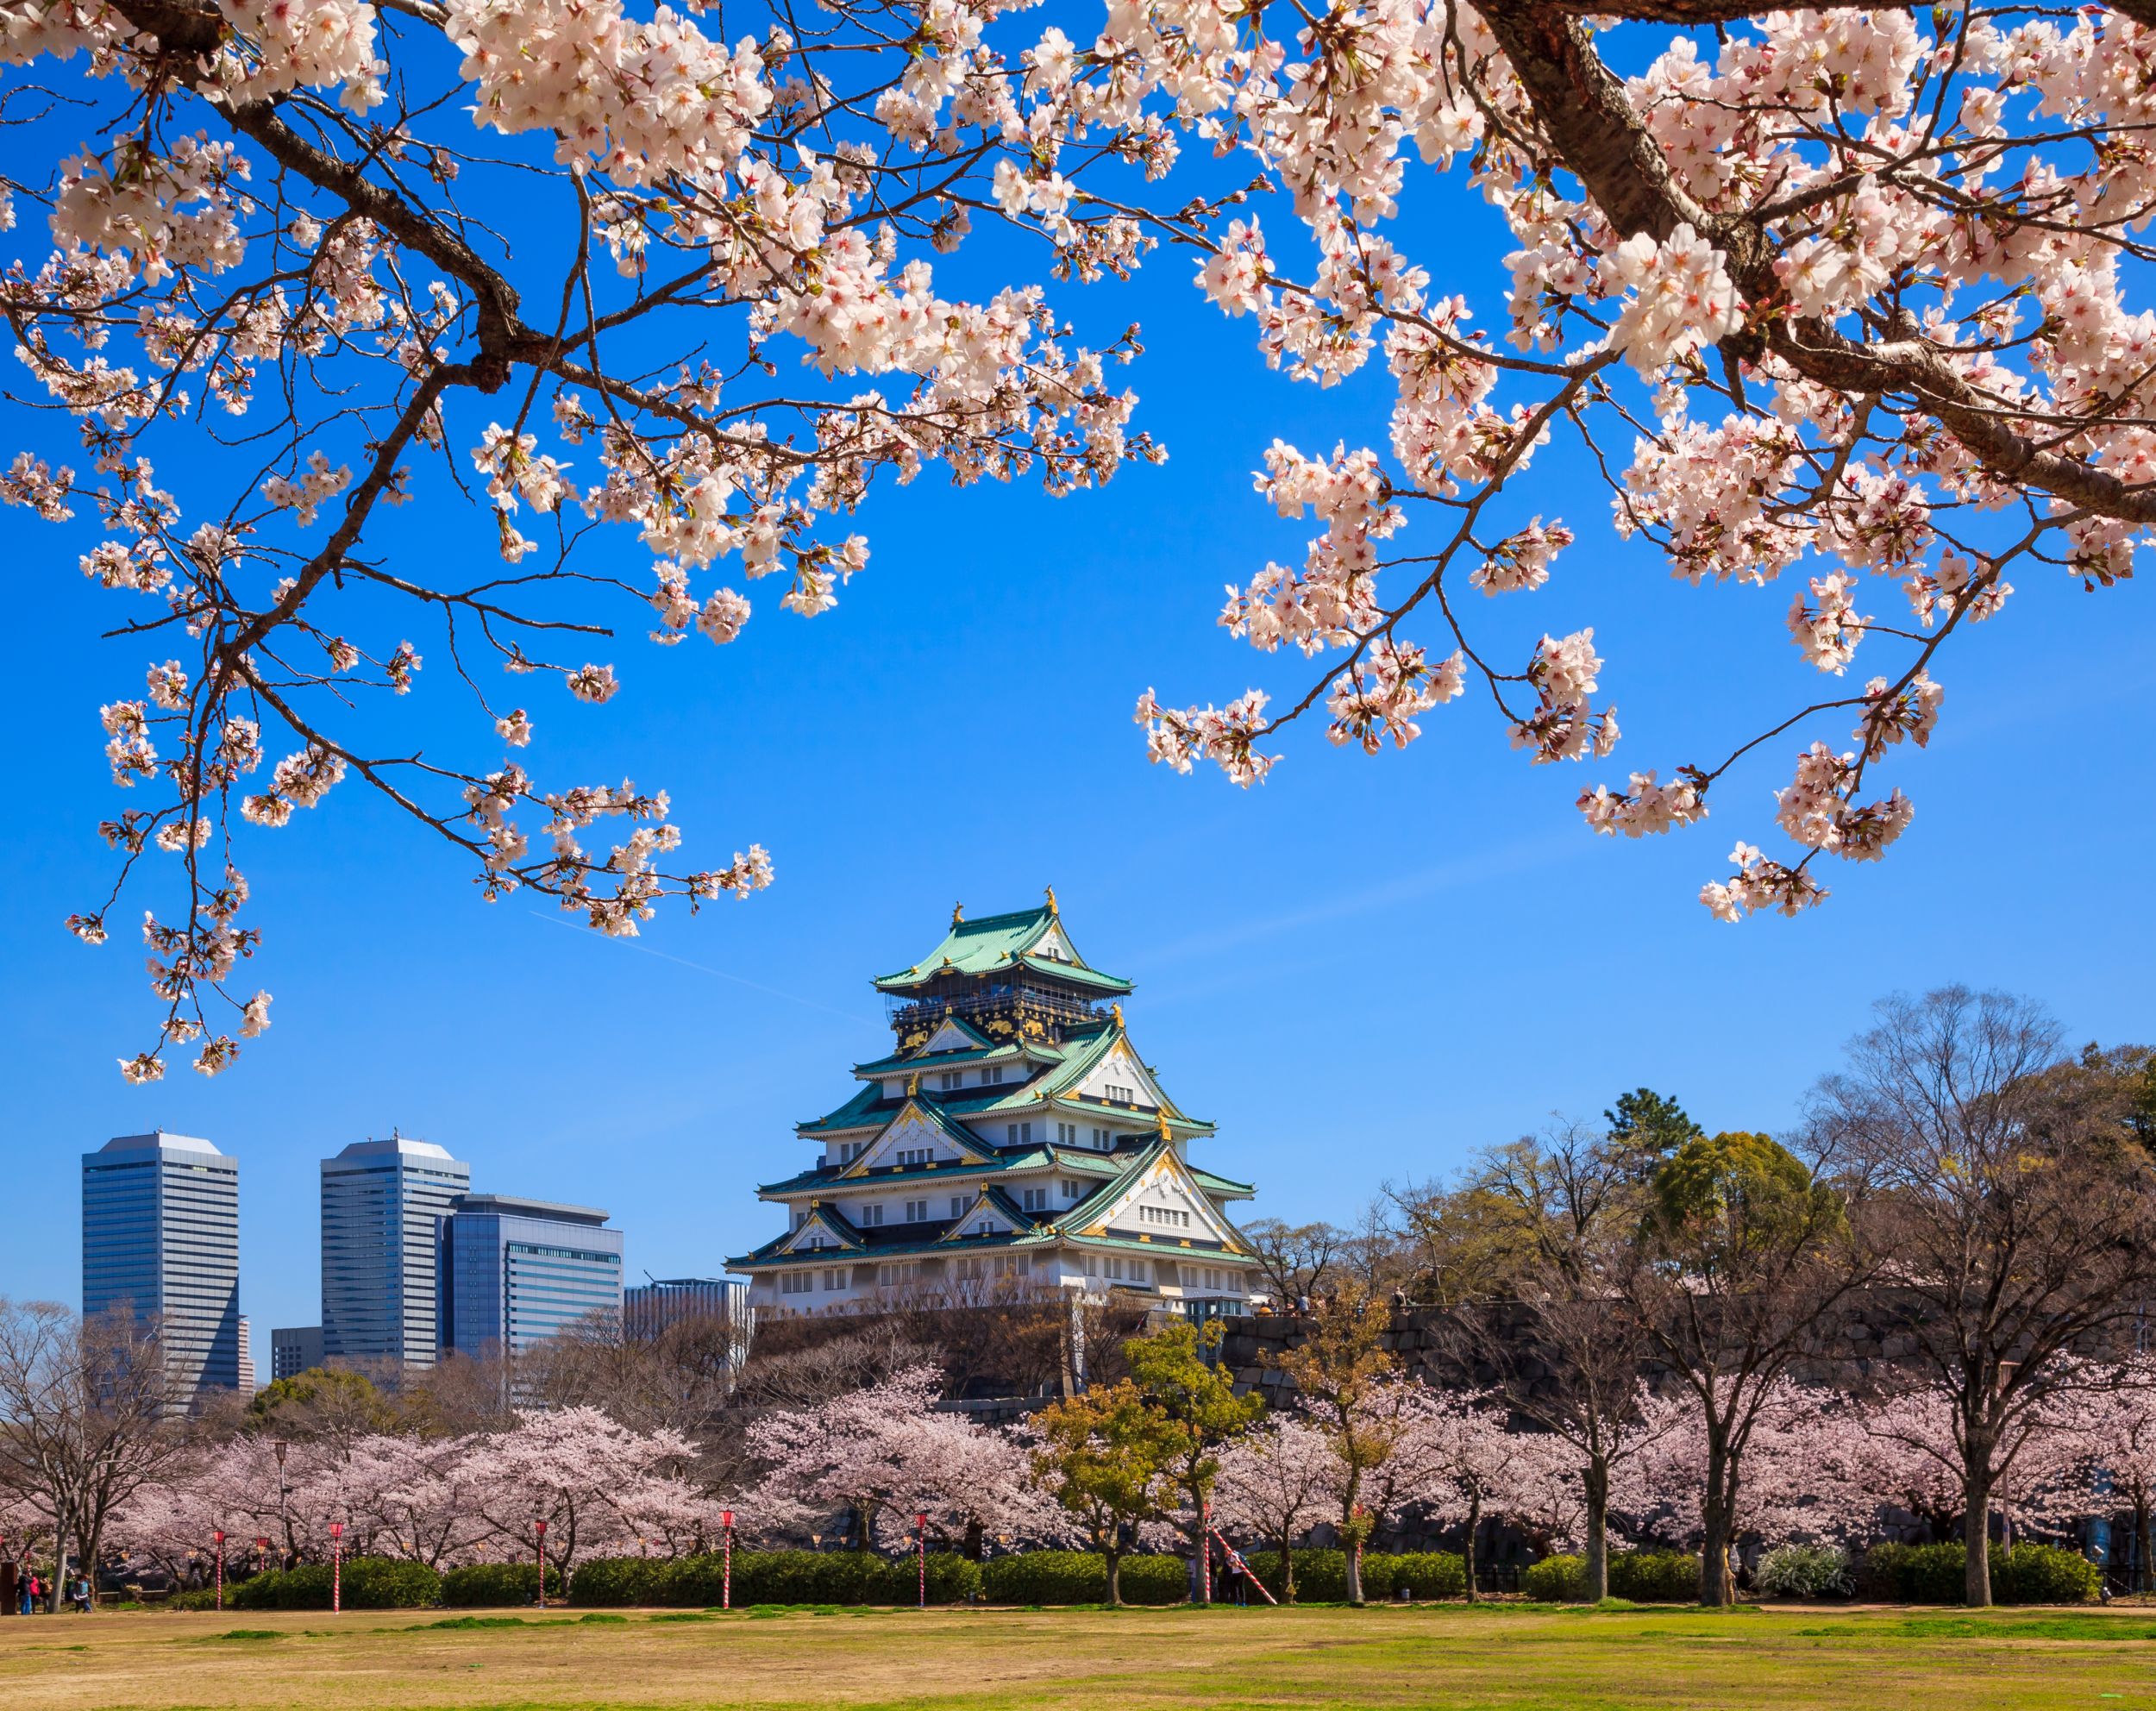 Osaka castle in cherry blossom season (Thinkstock/PA)